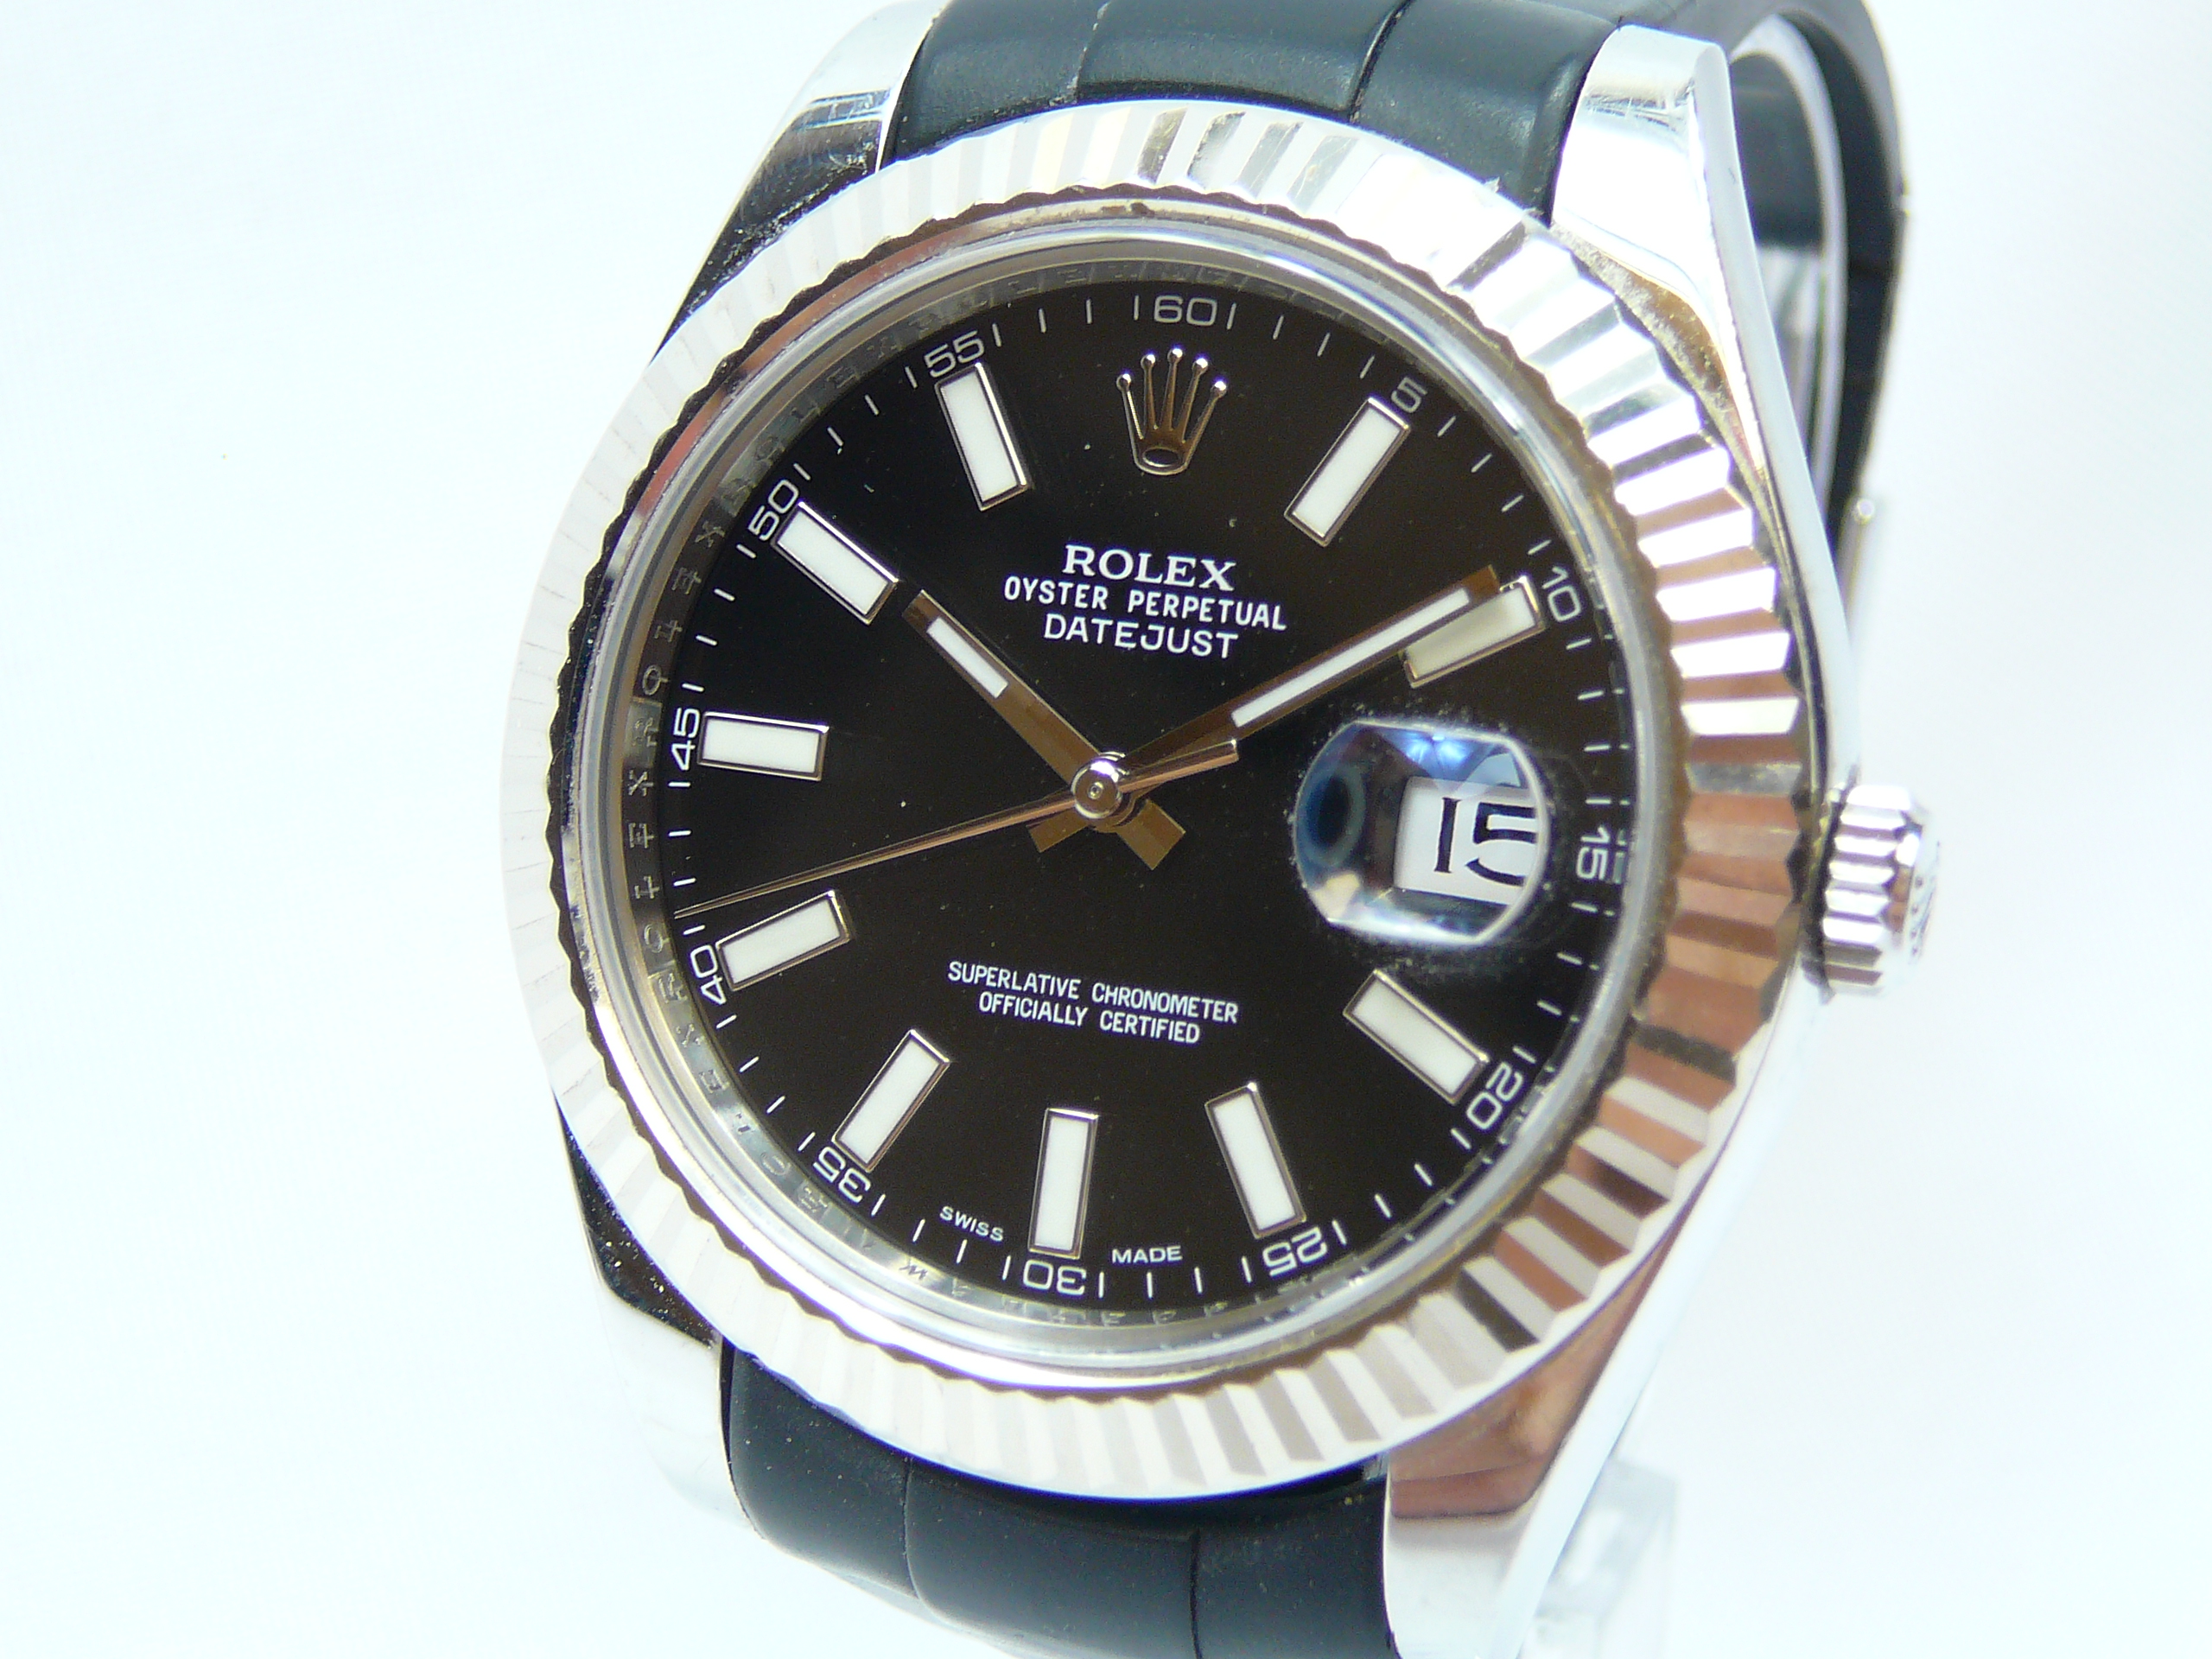 Gents Rolex Wrist Watch - Image 2 of 6